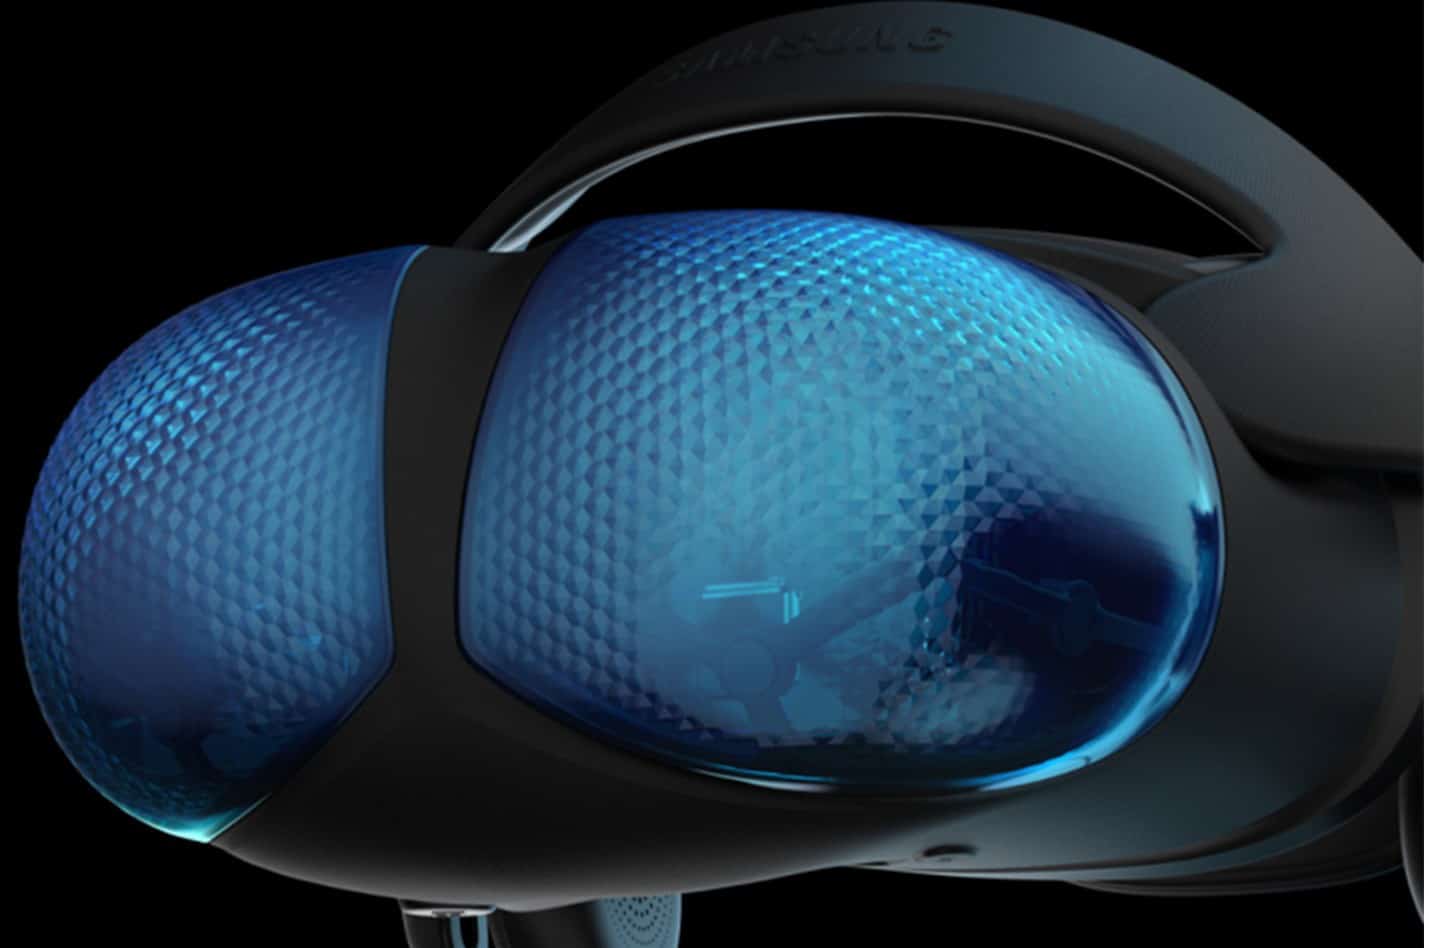 Утечки новой гарнитуры Samsung Odyssey VR демонстрируют странный дизайн, похожий на ошибку